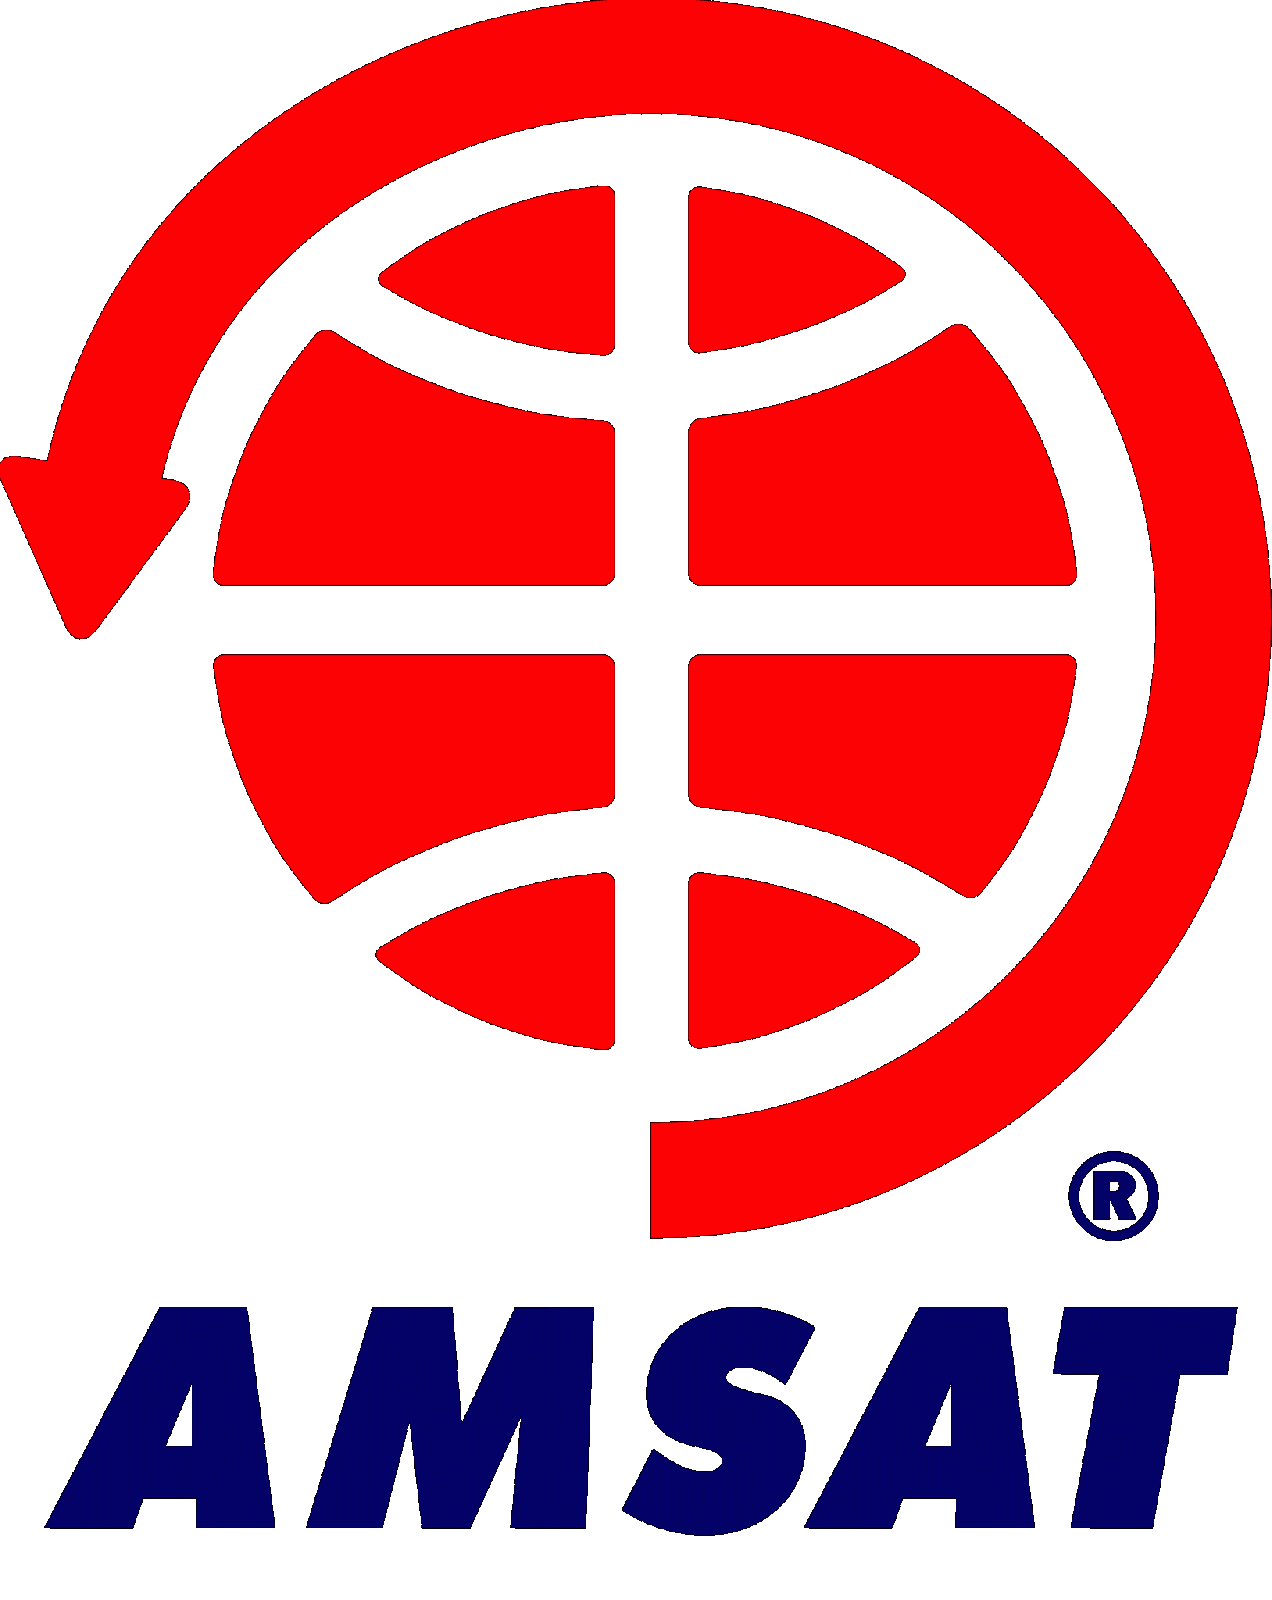 CQ Newsroom: AMSAT May Have 